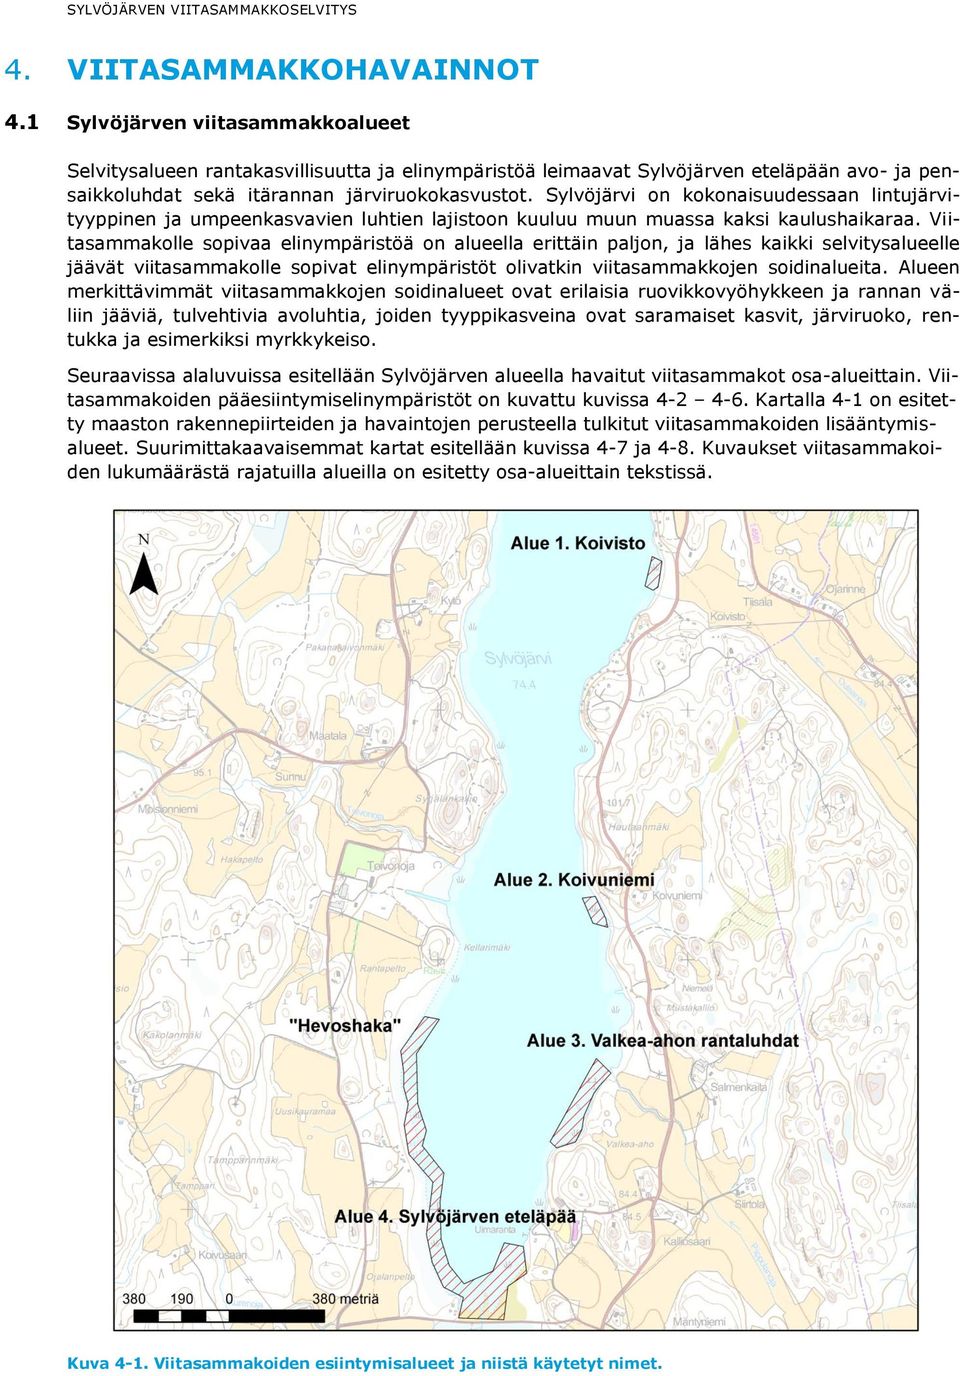 Sylvöjärvi on kokonaisuudessaan lintujärvityyppinen ja umpeenkasvavien luhtien lajistoon kuuluu muun muassa kaksi kaulushaikaraa.